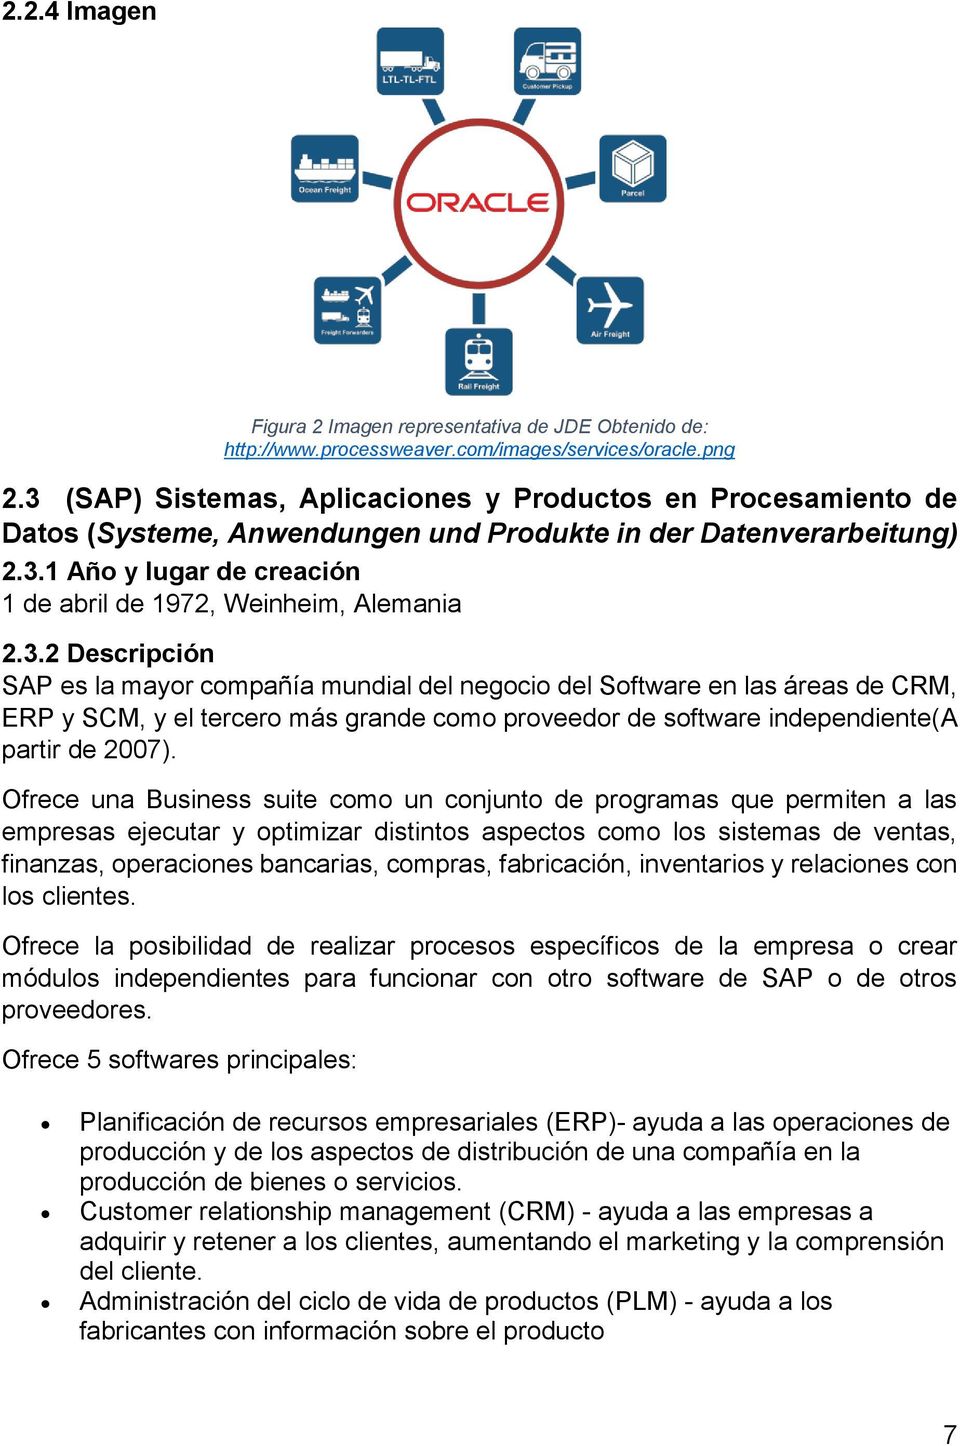 3.2 Descripción SAP es la mayor compañía mundial del negocio del Software en las áreas de CRM, ERP y SCM, y el tercero más grande como proveedor de software independiente(a partir de 2007).